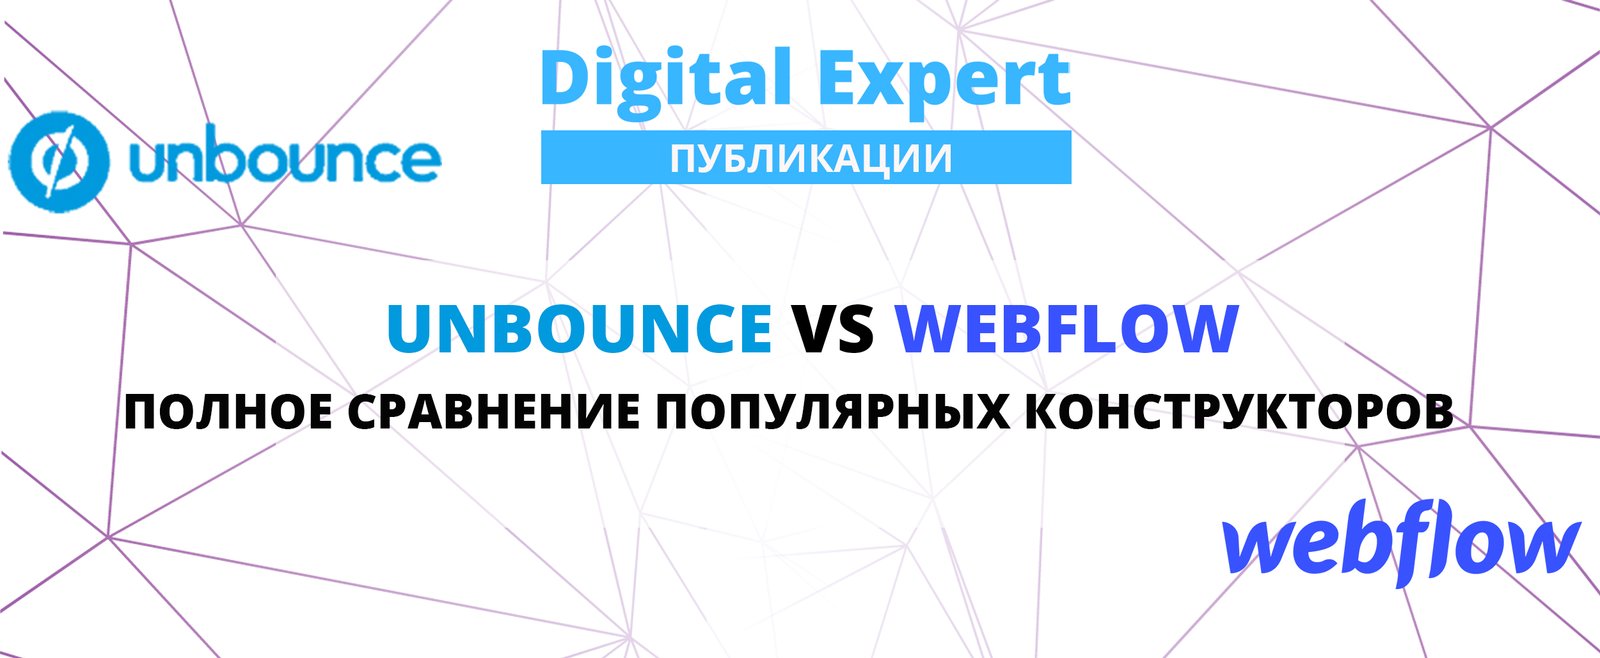 Unbounce vs Webflow: лучшее решение в 2021 году